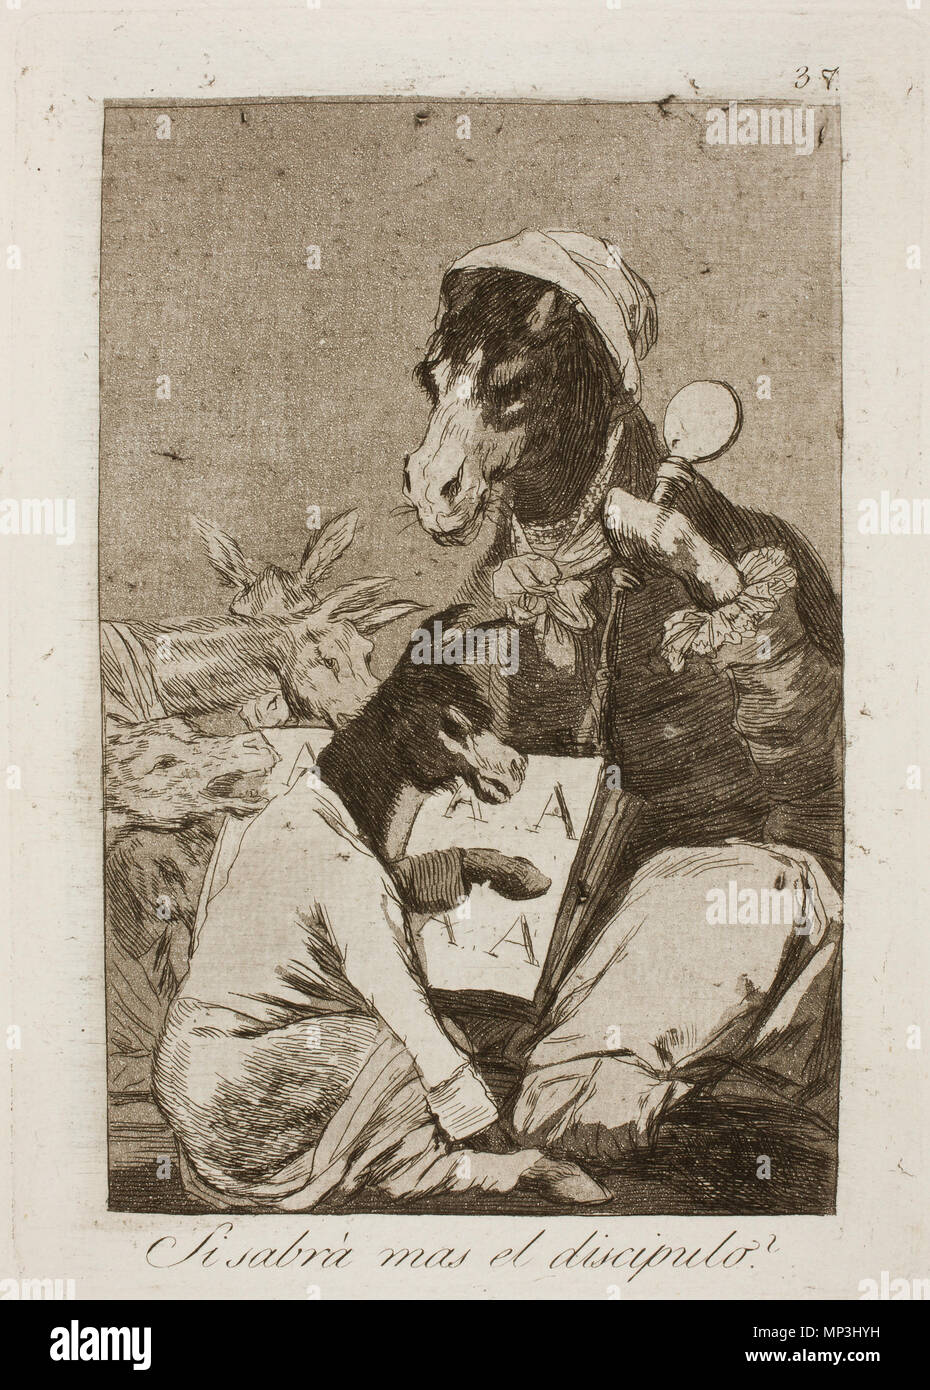 913 Museo del Prado - Goya - Caprichos - No. 37 - Si sabrá mas el discipulo Stock Photo